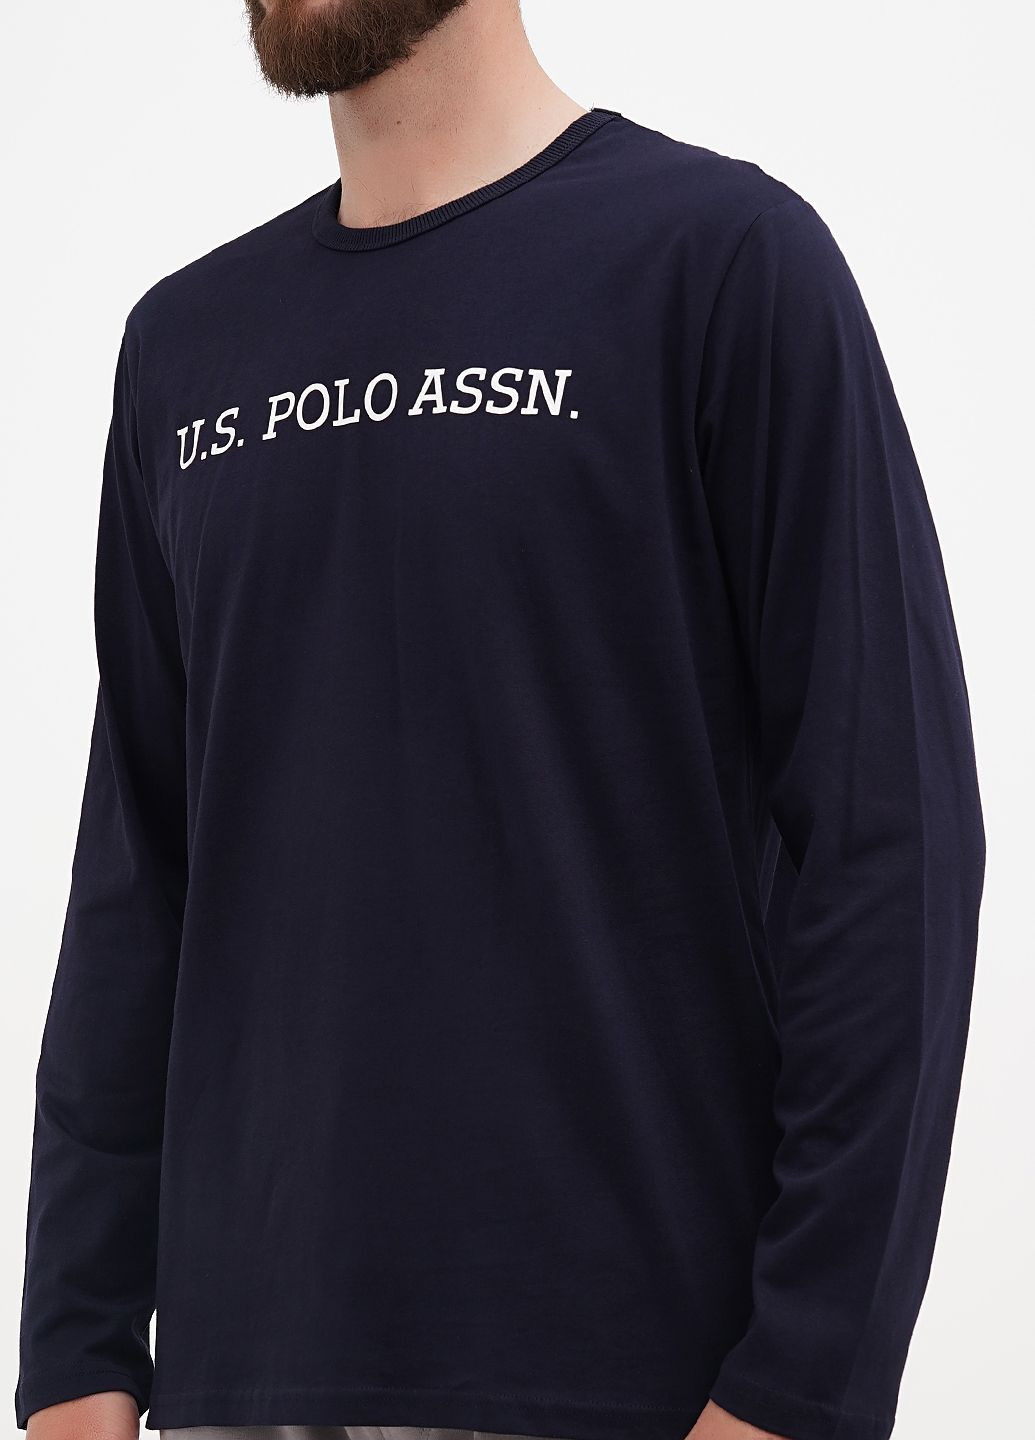 Темно-синяя футболка-футболка u.s. polo assn мужская для мужчин U.S. Polo Assn.